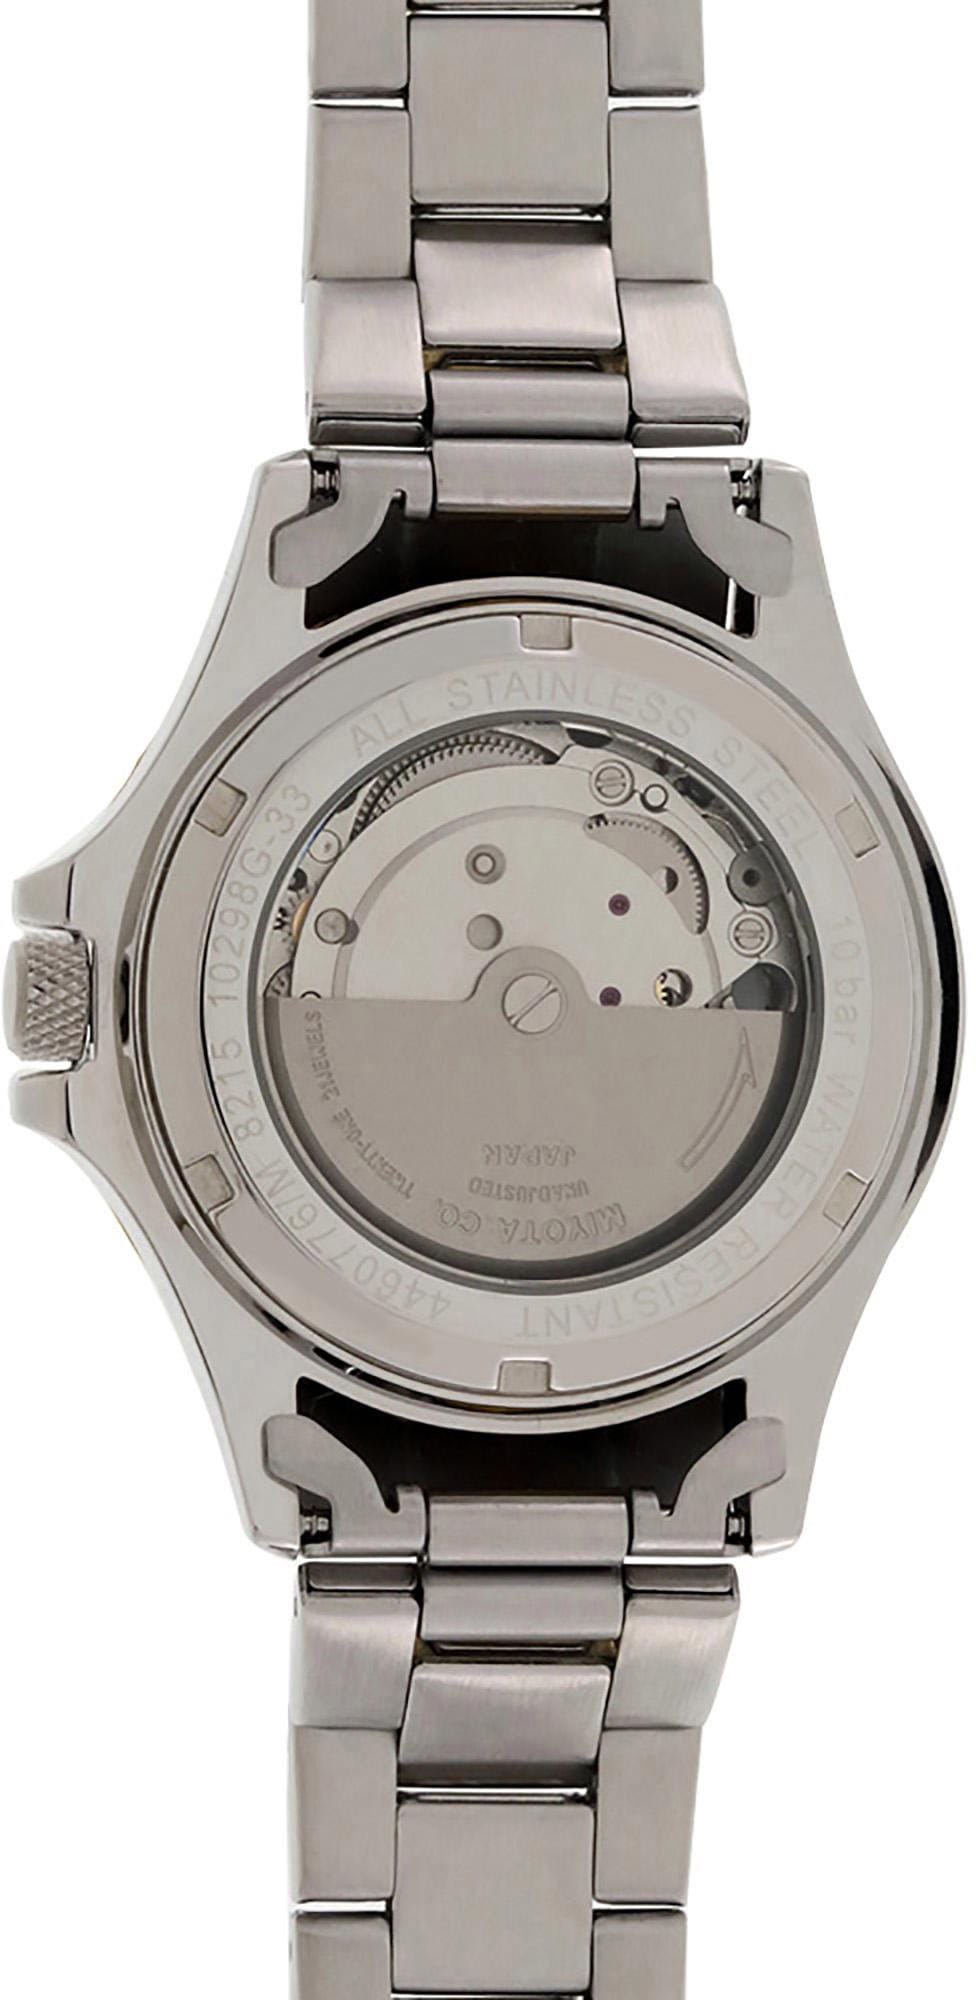 Dugena Automatikuhr »Diver, 4460776«, Armbanduhr, Herrenuhr, Datum, Leuchtzeiger